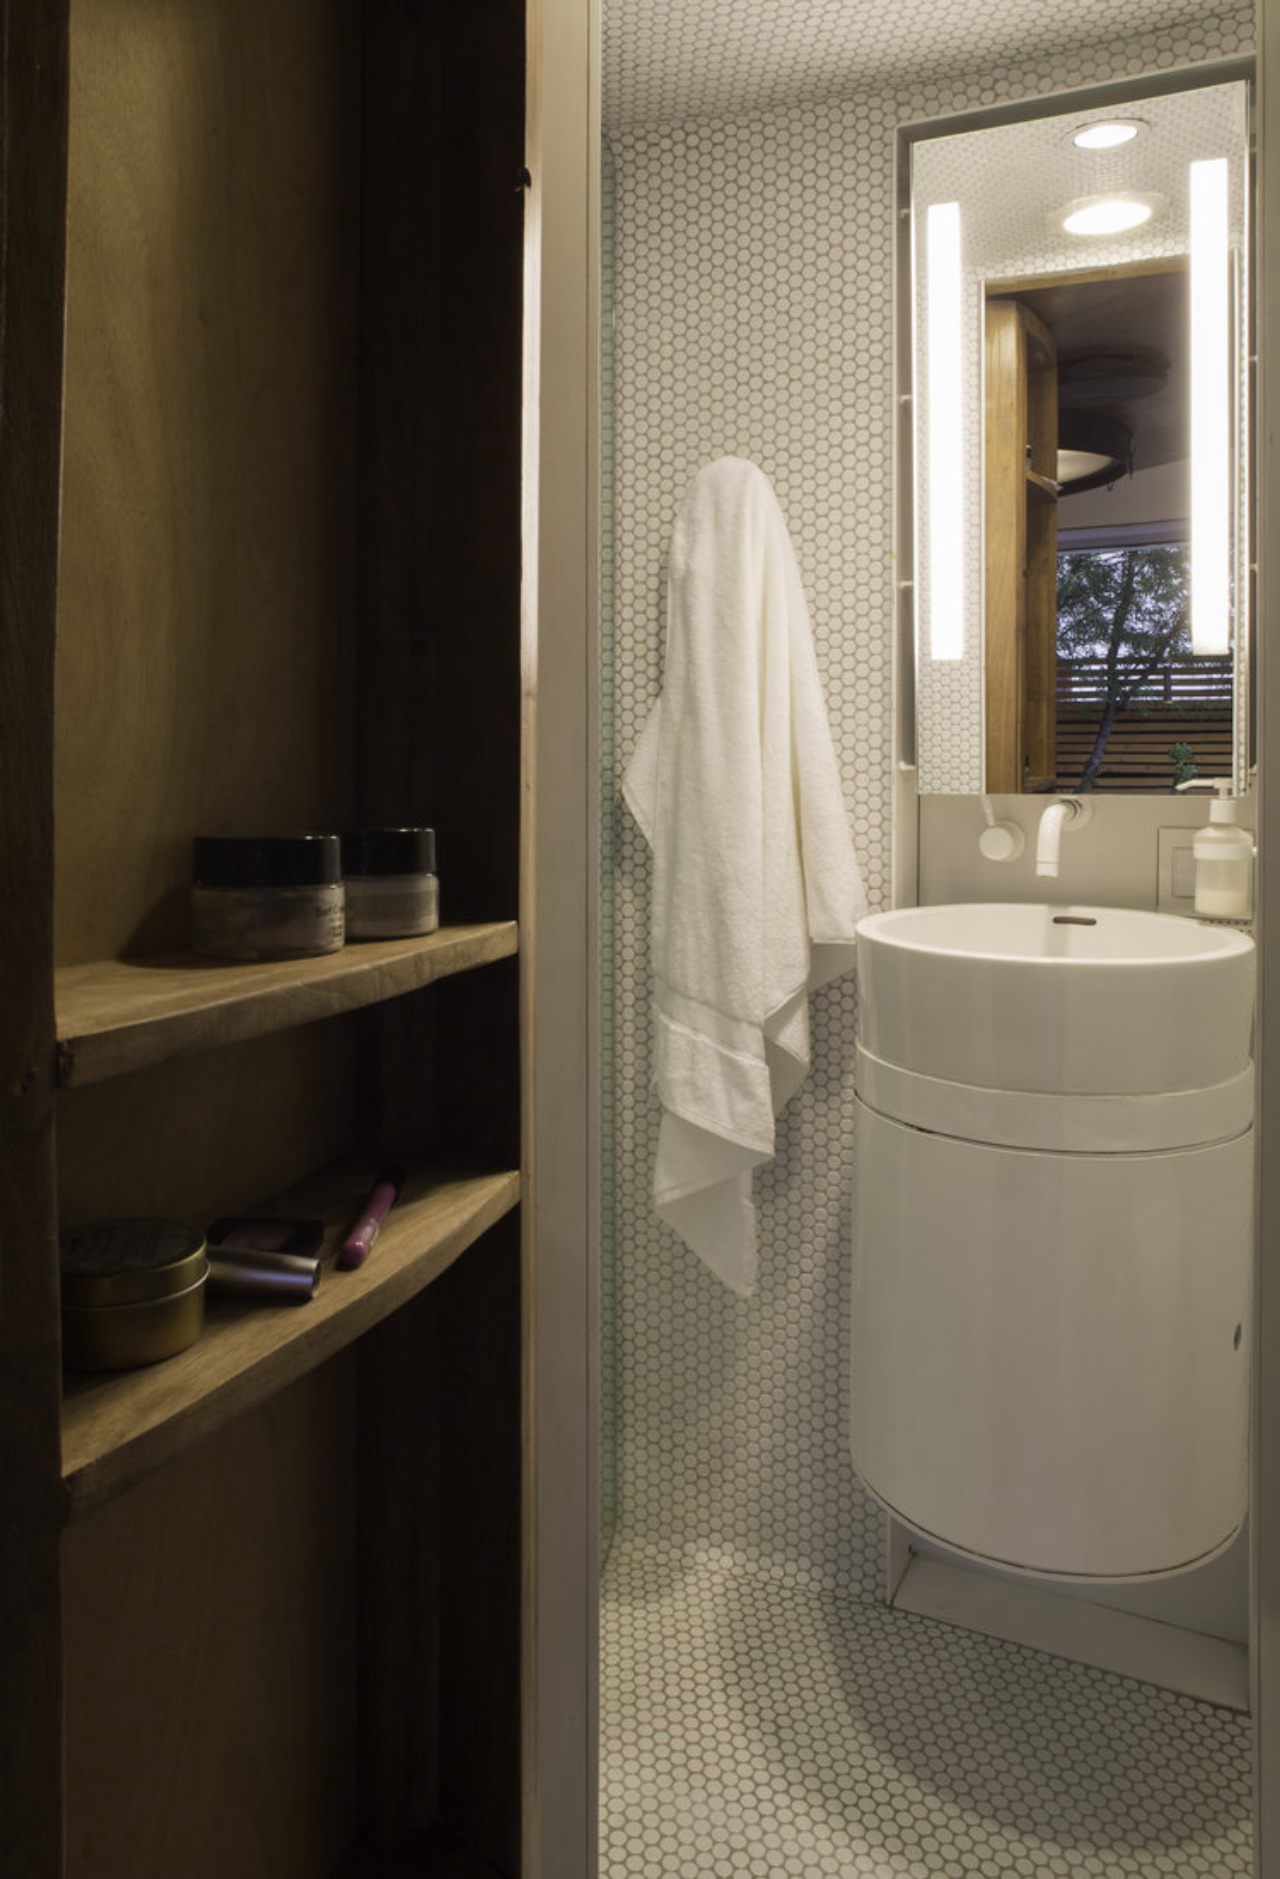 Banheiro da casa é bem compacto. Foto: Kaiser Works / Reprodução